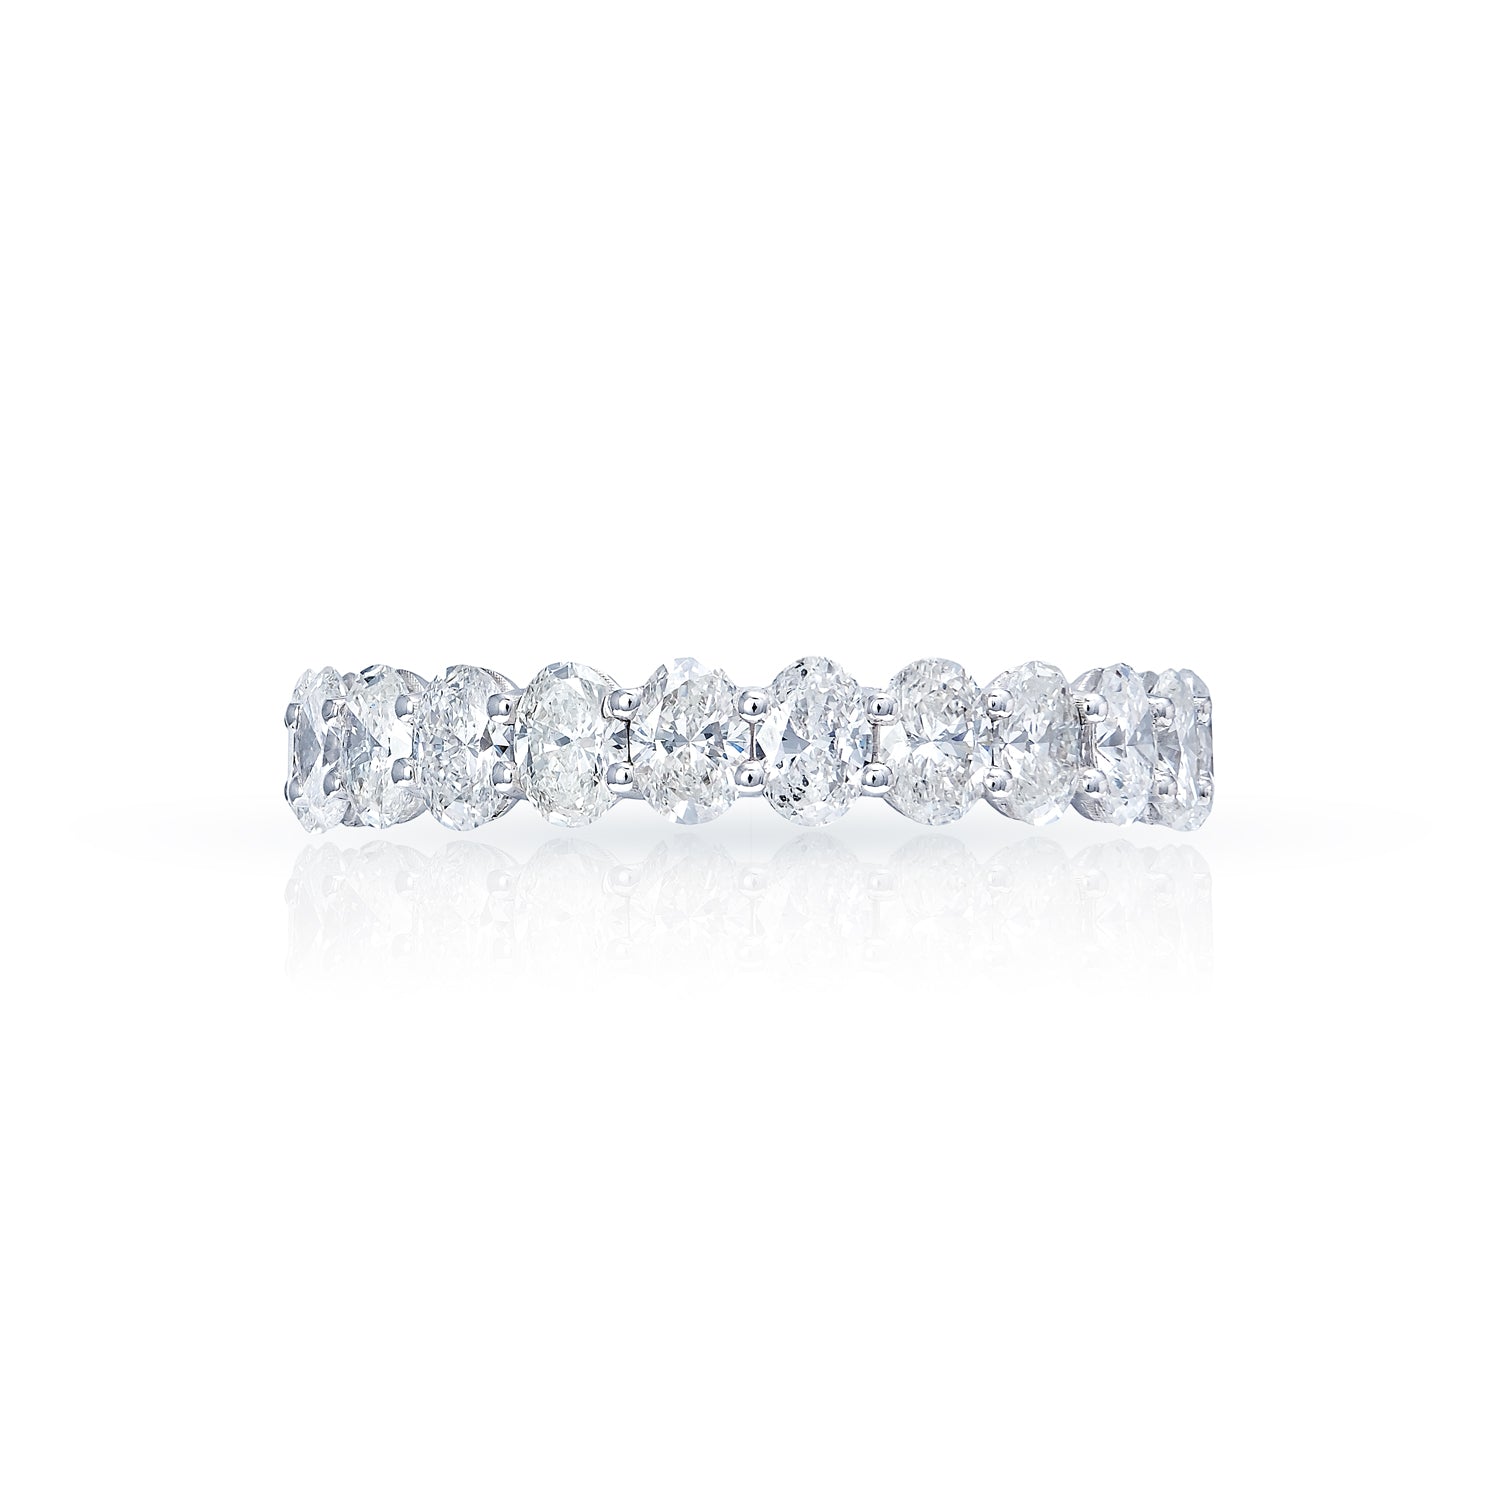 Imani 4 Carat Oval Cut Diamond Engagement Ring in 14 Karat White Gold 